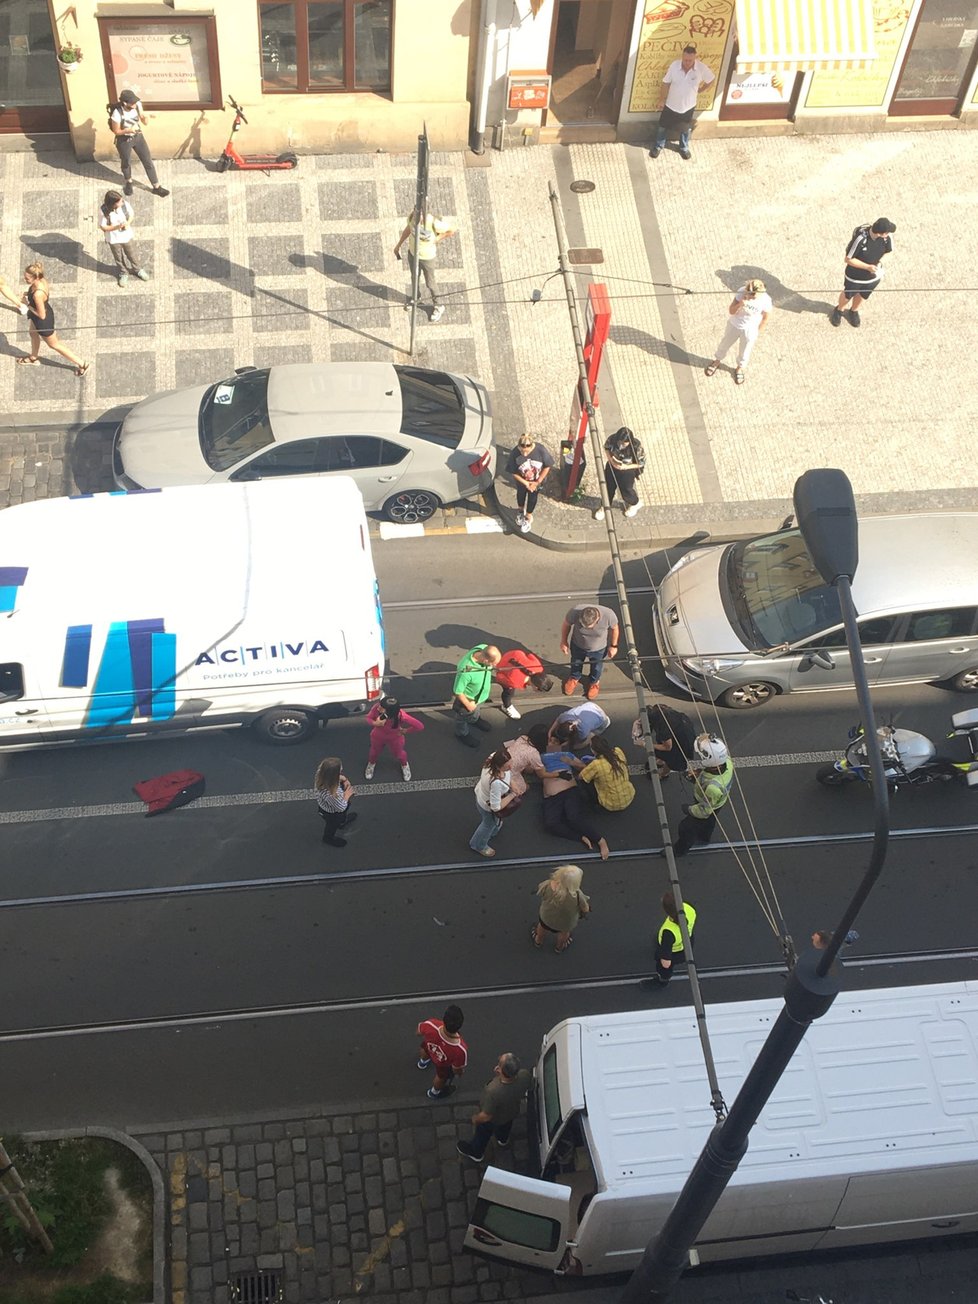 Záchranáři a plicisté v pátek 10. září 021 zsahovali u dopravní nehody v Bělehradské ulici v Praze, kde automobil srazil chodkyni.